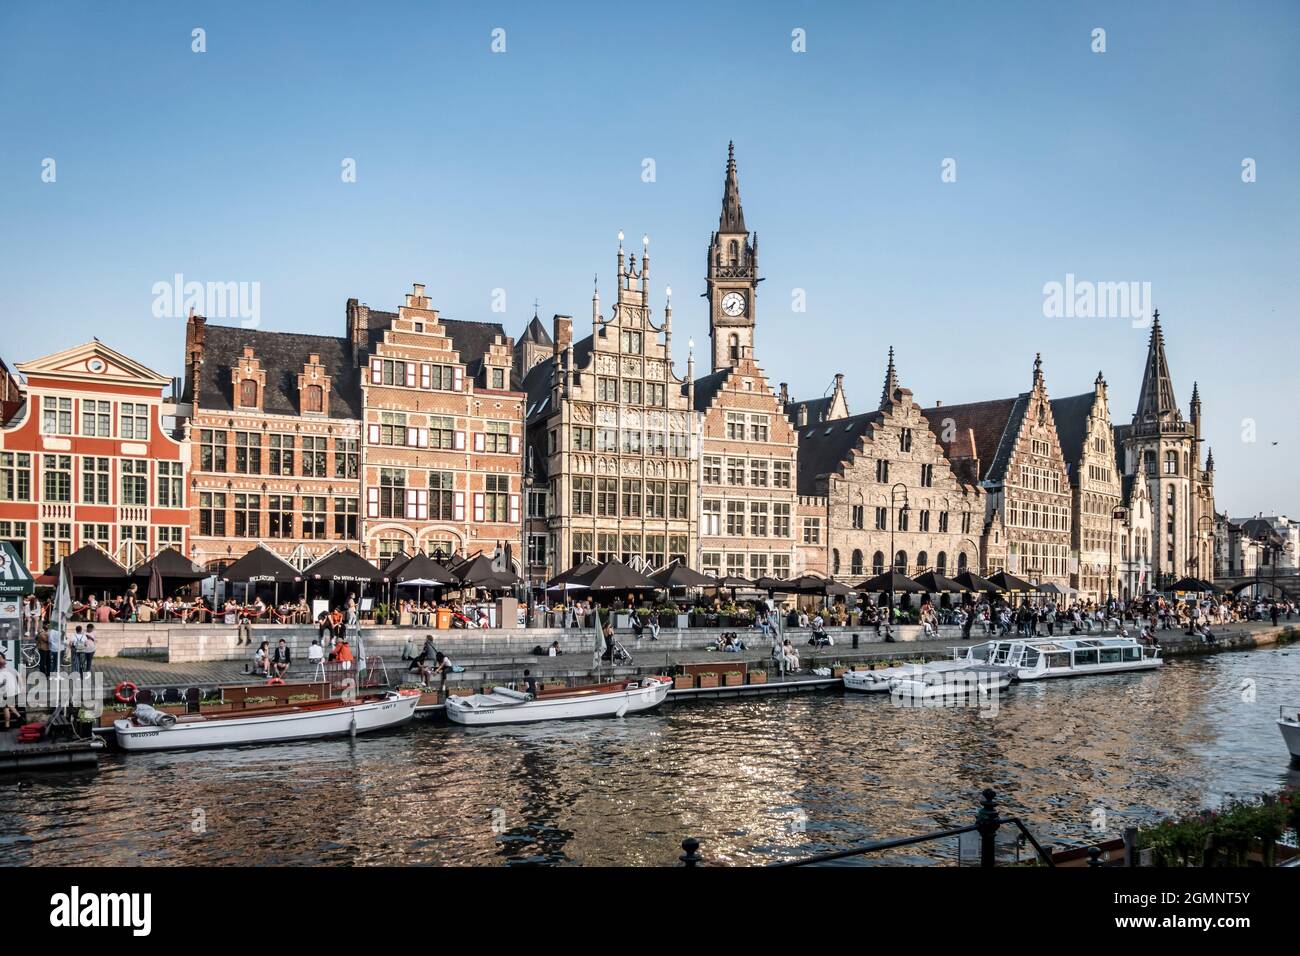 Touristenboot auf dem Fluss Leie, Ganslei Kai,  Rathaus der Vrije Schippers, mittelalterliche Häuser, Gent, Flandern, Belgien, Europ Stock Photo